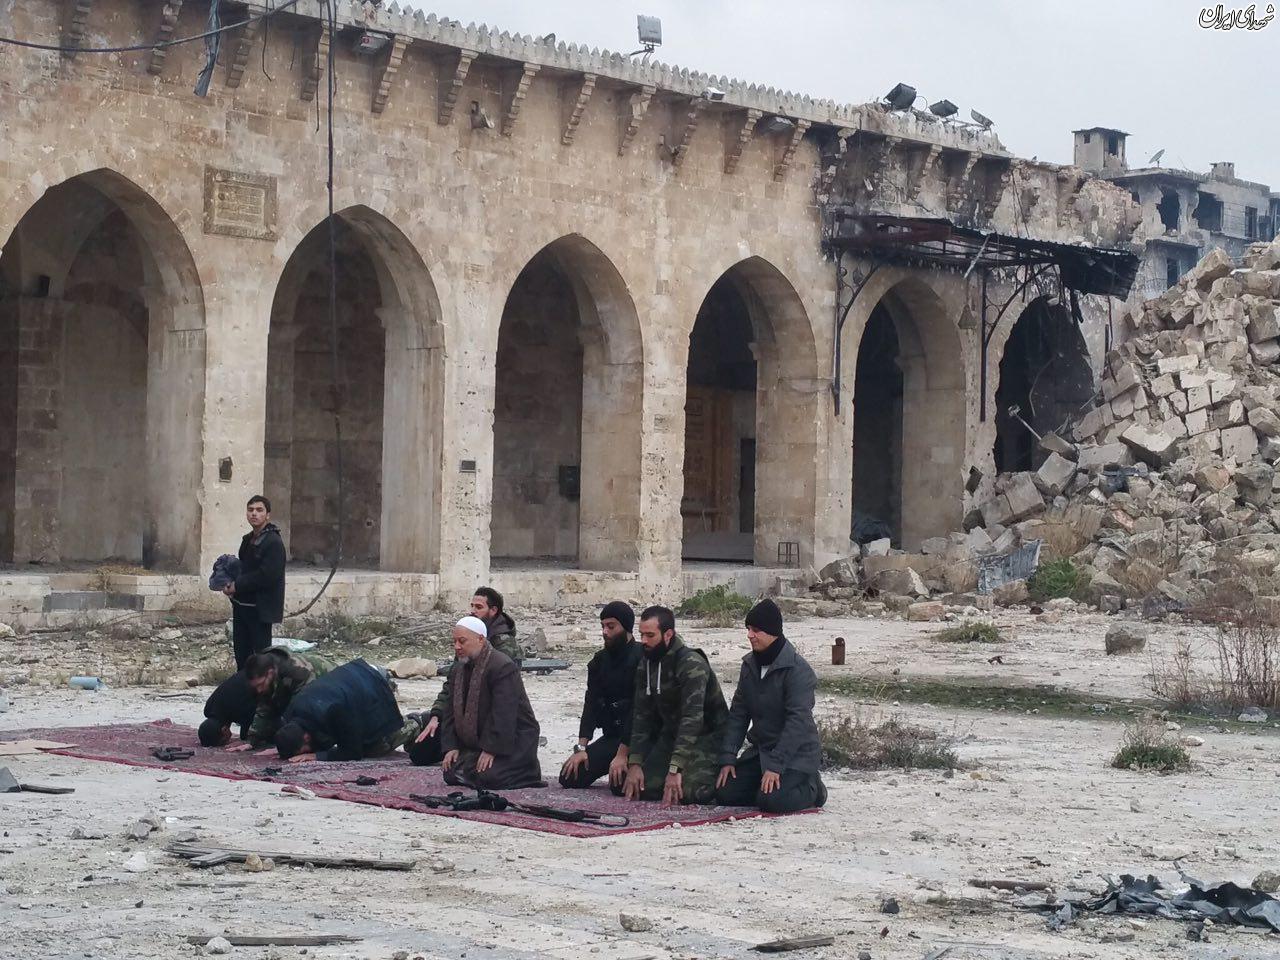 اولين نماز جماعت در مسجد اموی حلب+عکس